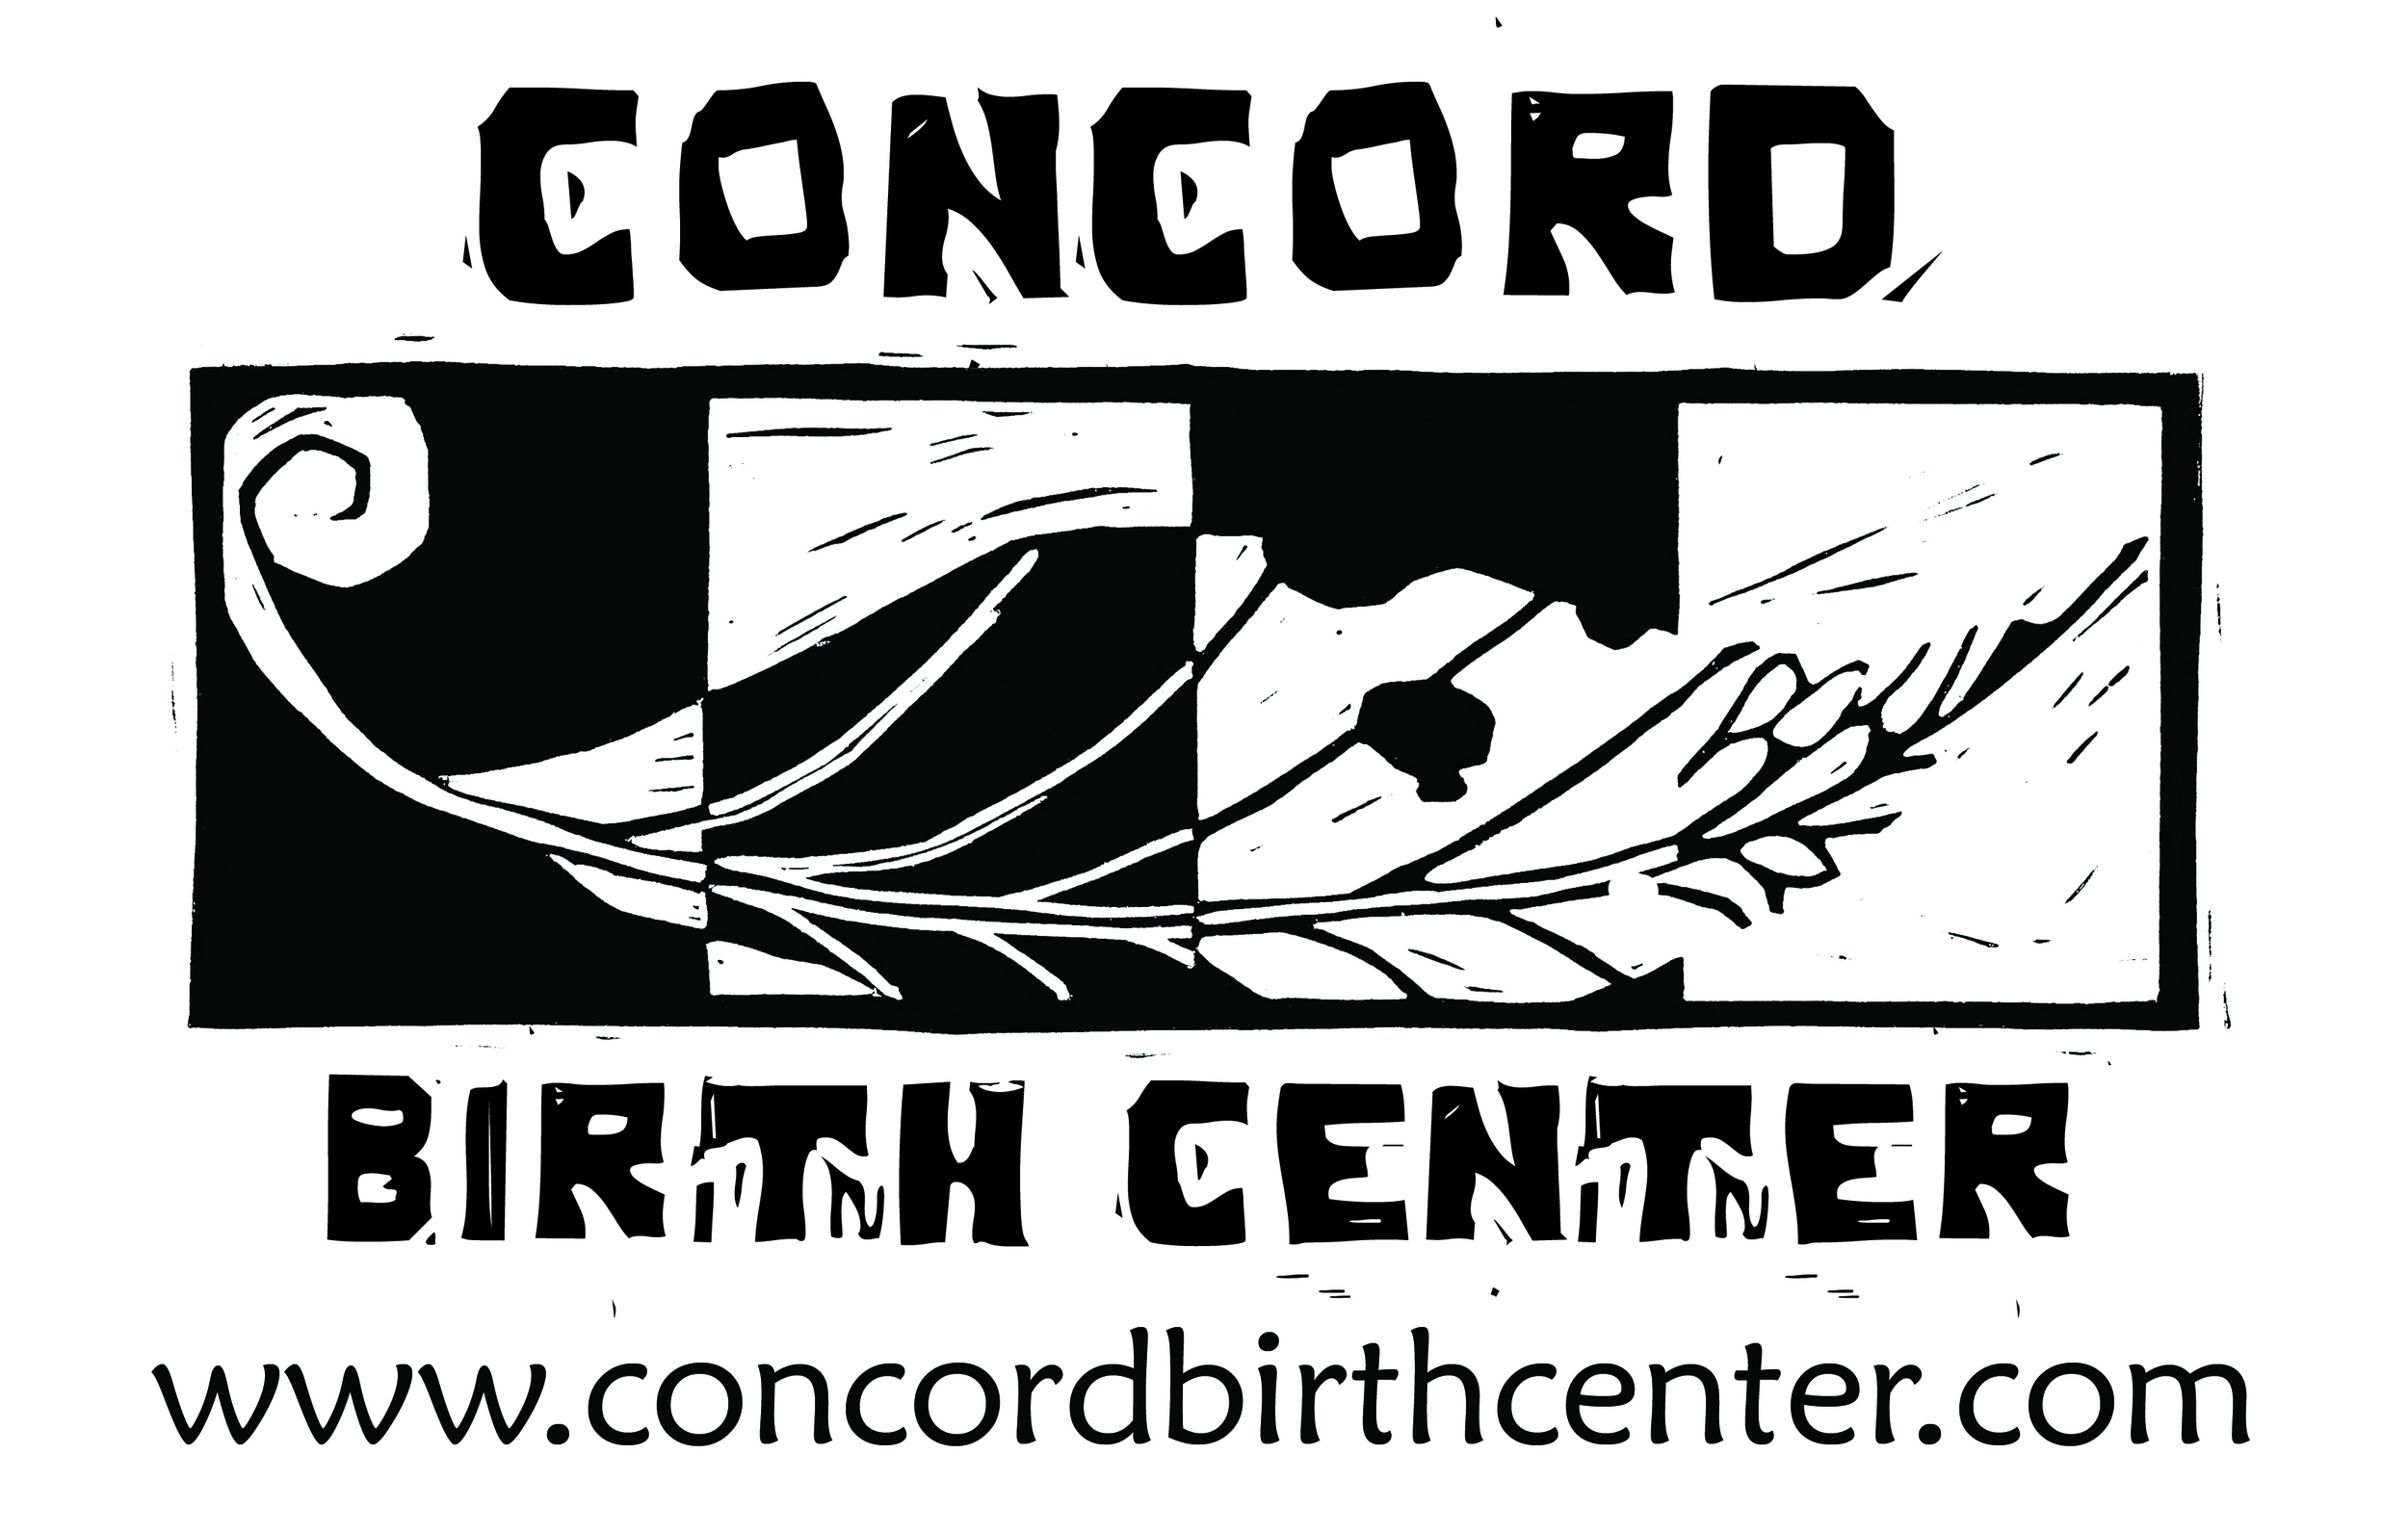 Concord Birth Center